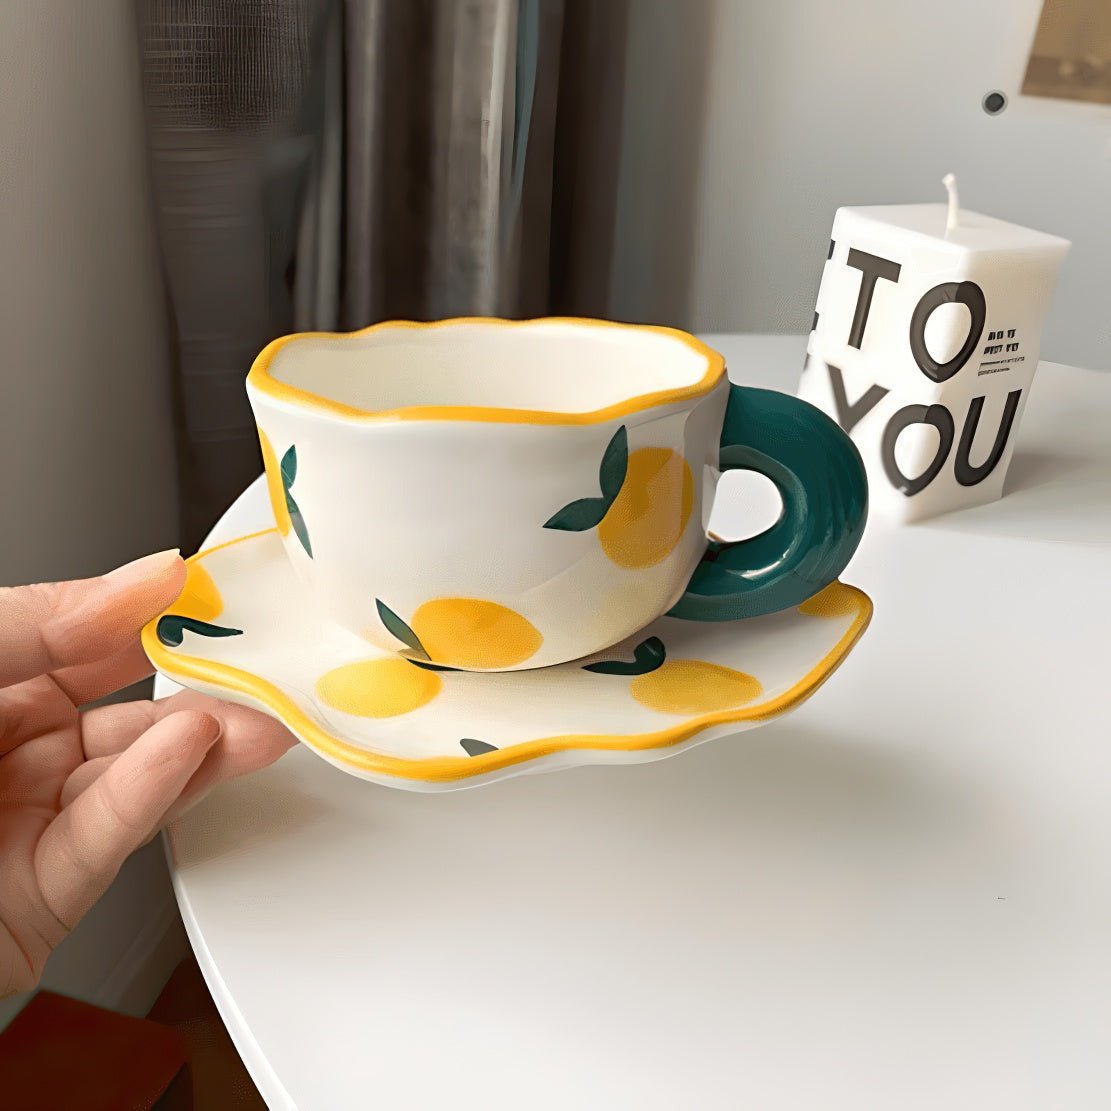 Yellow lemon pattern ceramic mug with matching saucer